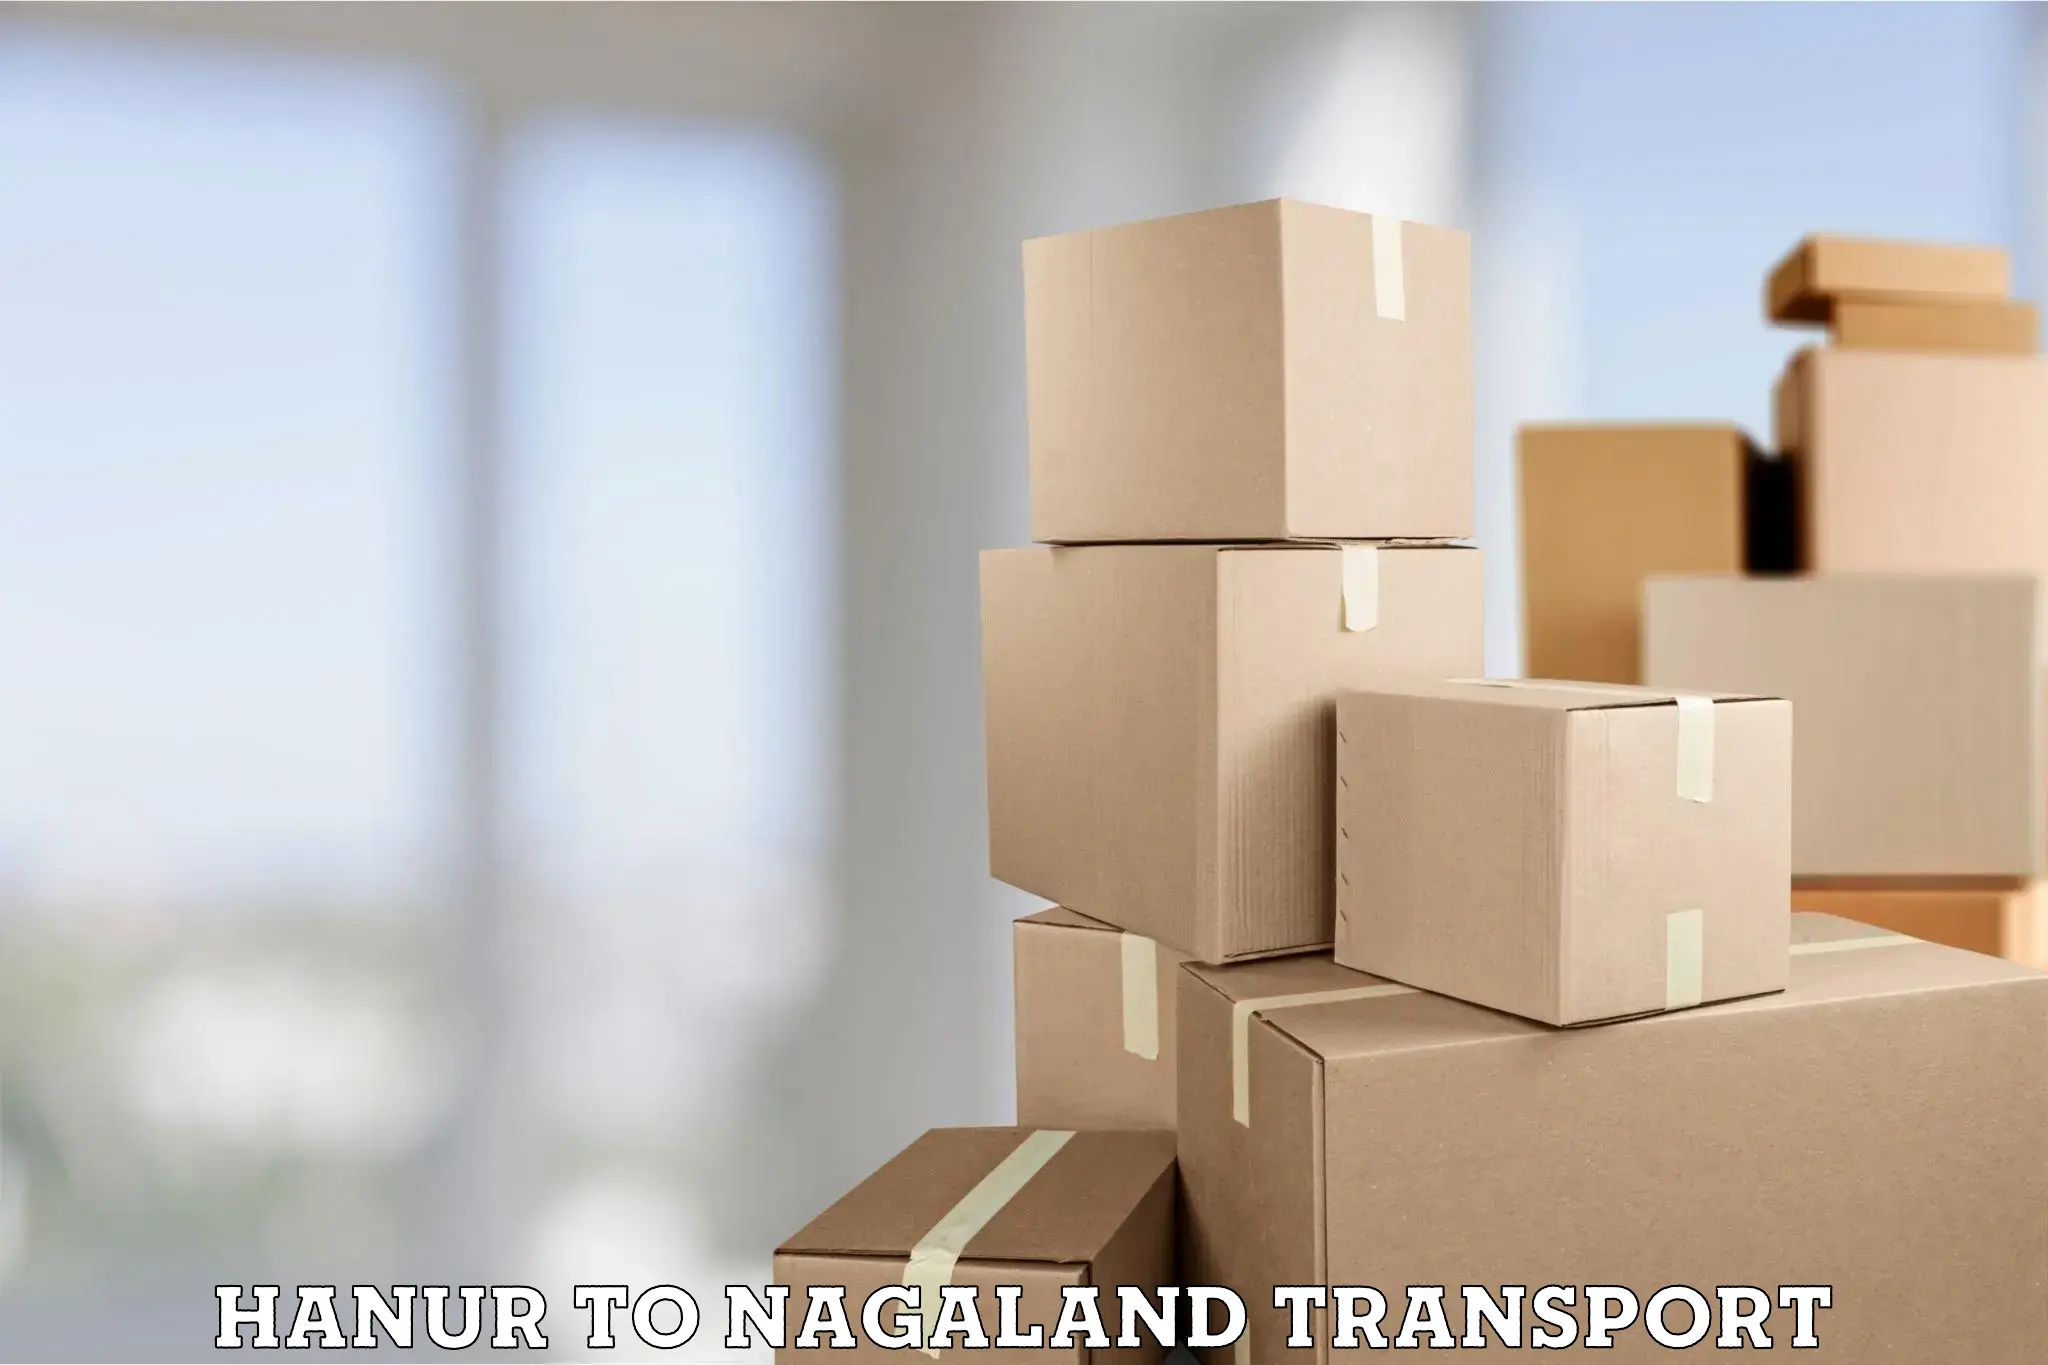 Online transport service Hanur to Nagaland